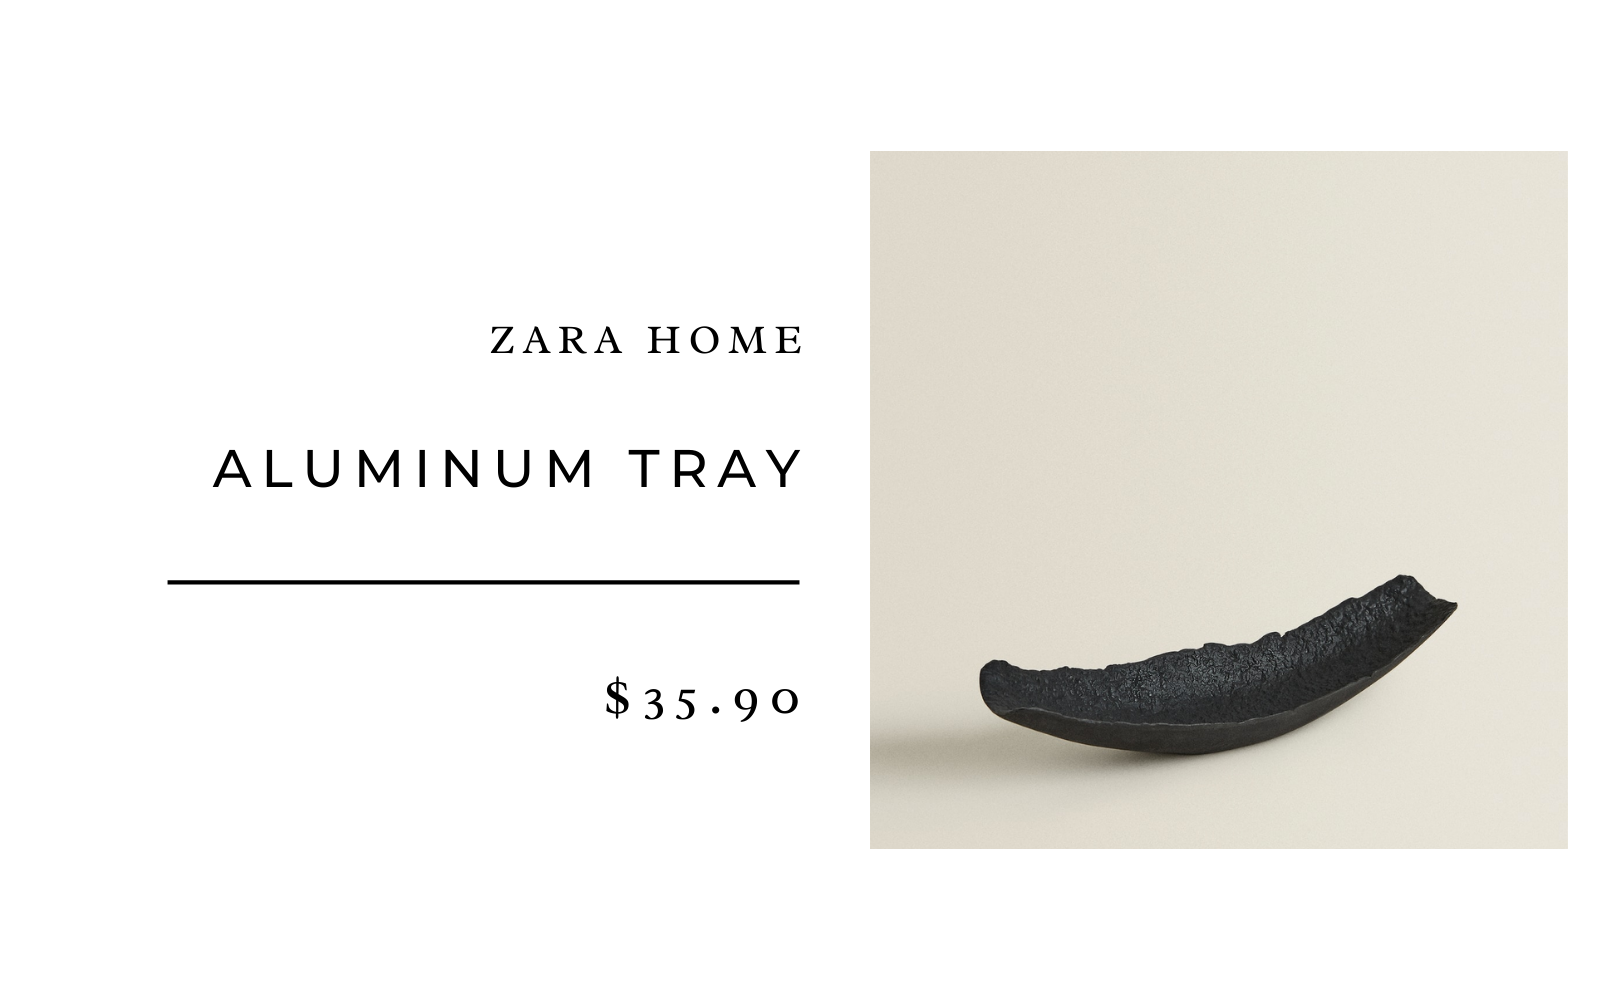 Zara Home ALUMINUM TRAY